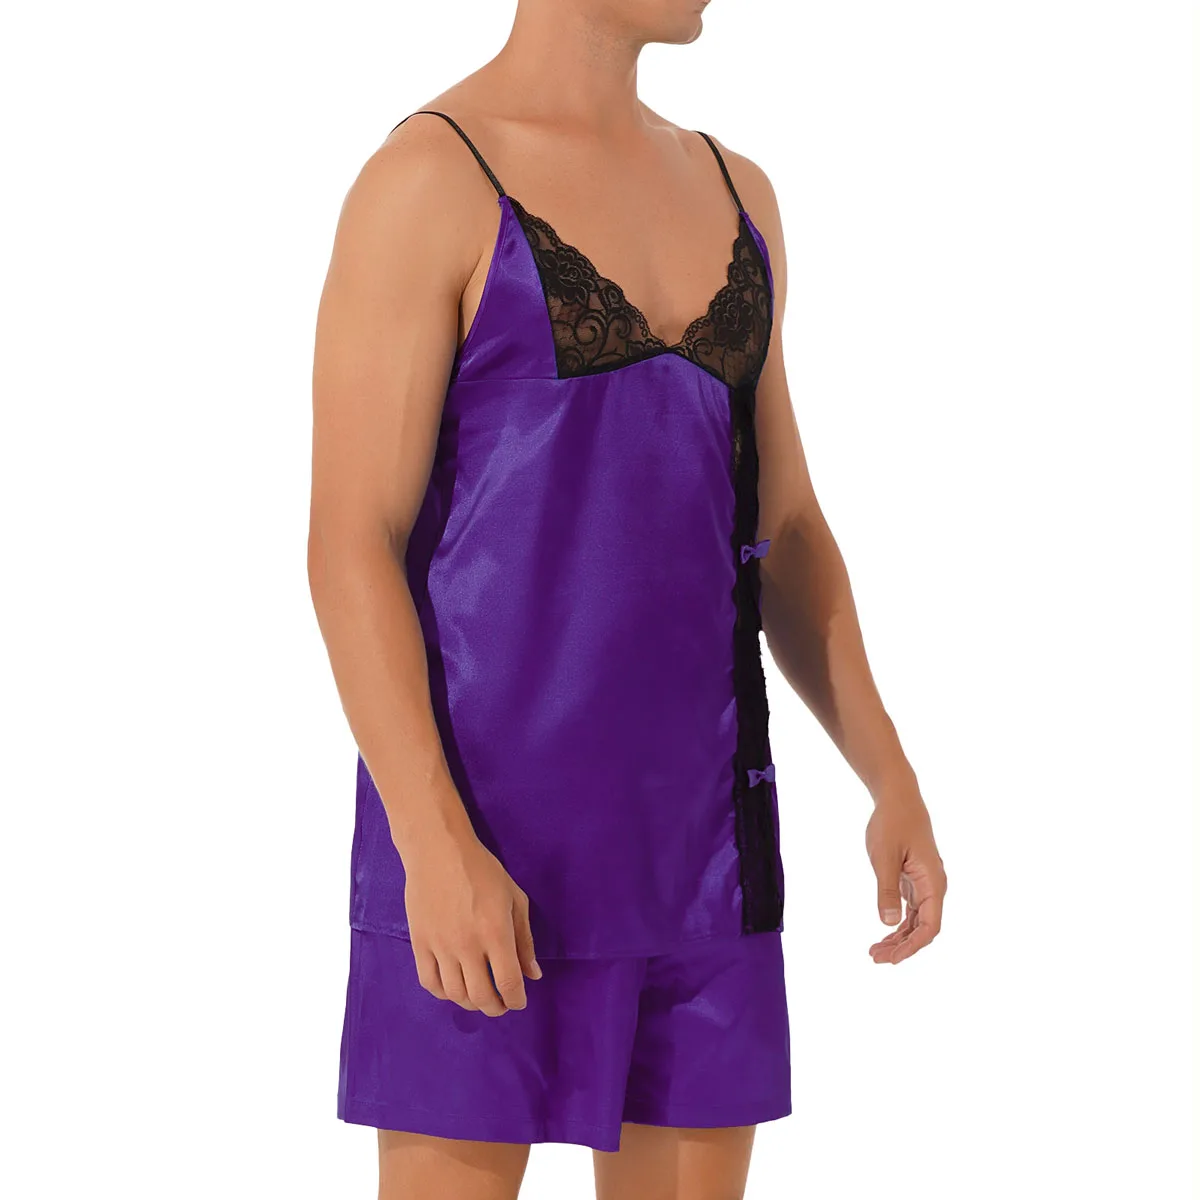 Men Satin Sissy Pajama Set Crossdressing Crop Top Shorts Nightwear Nightclothes 